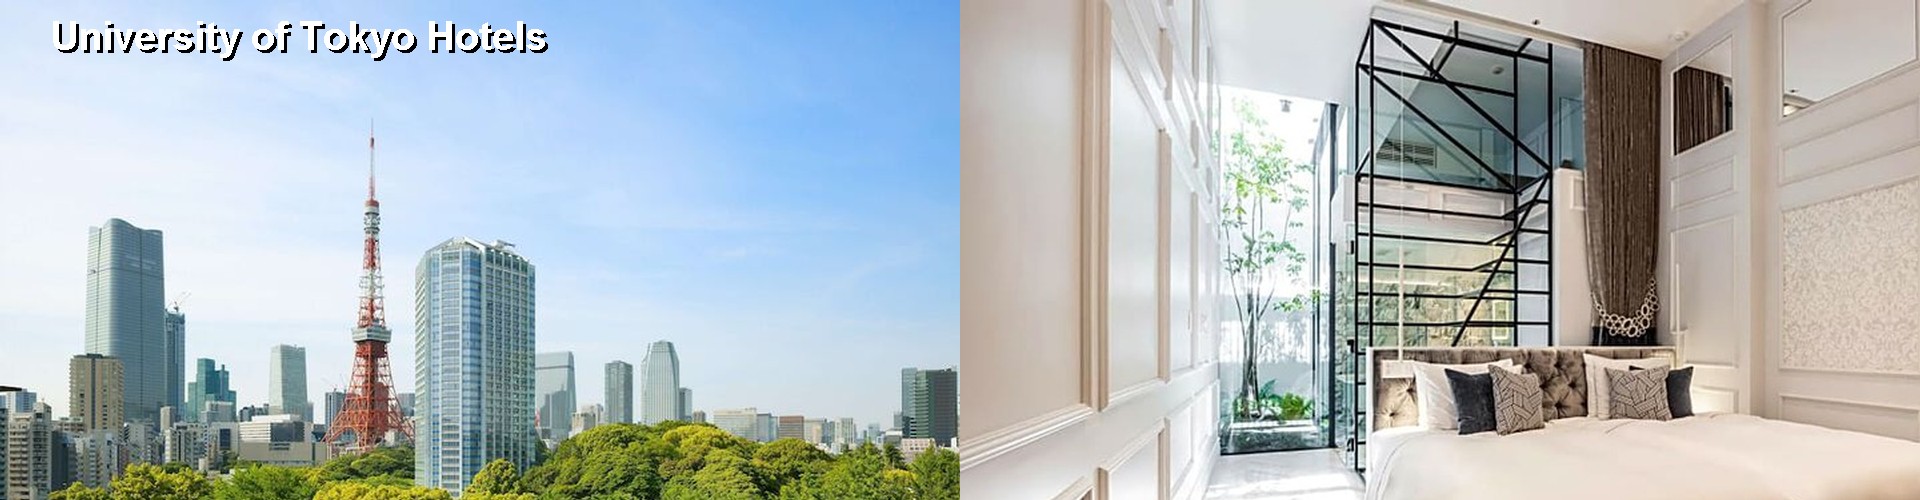 5 Best Hotels near University of Tokyo